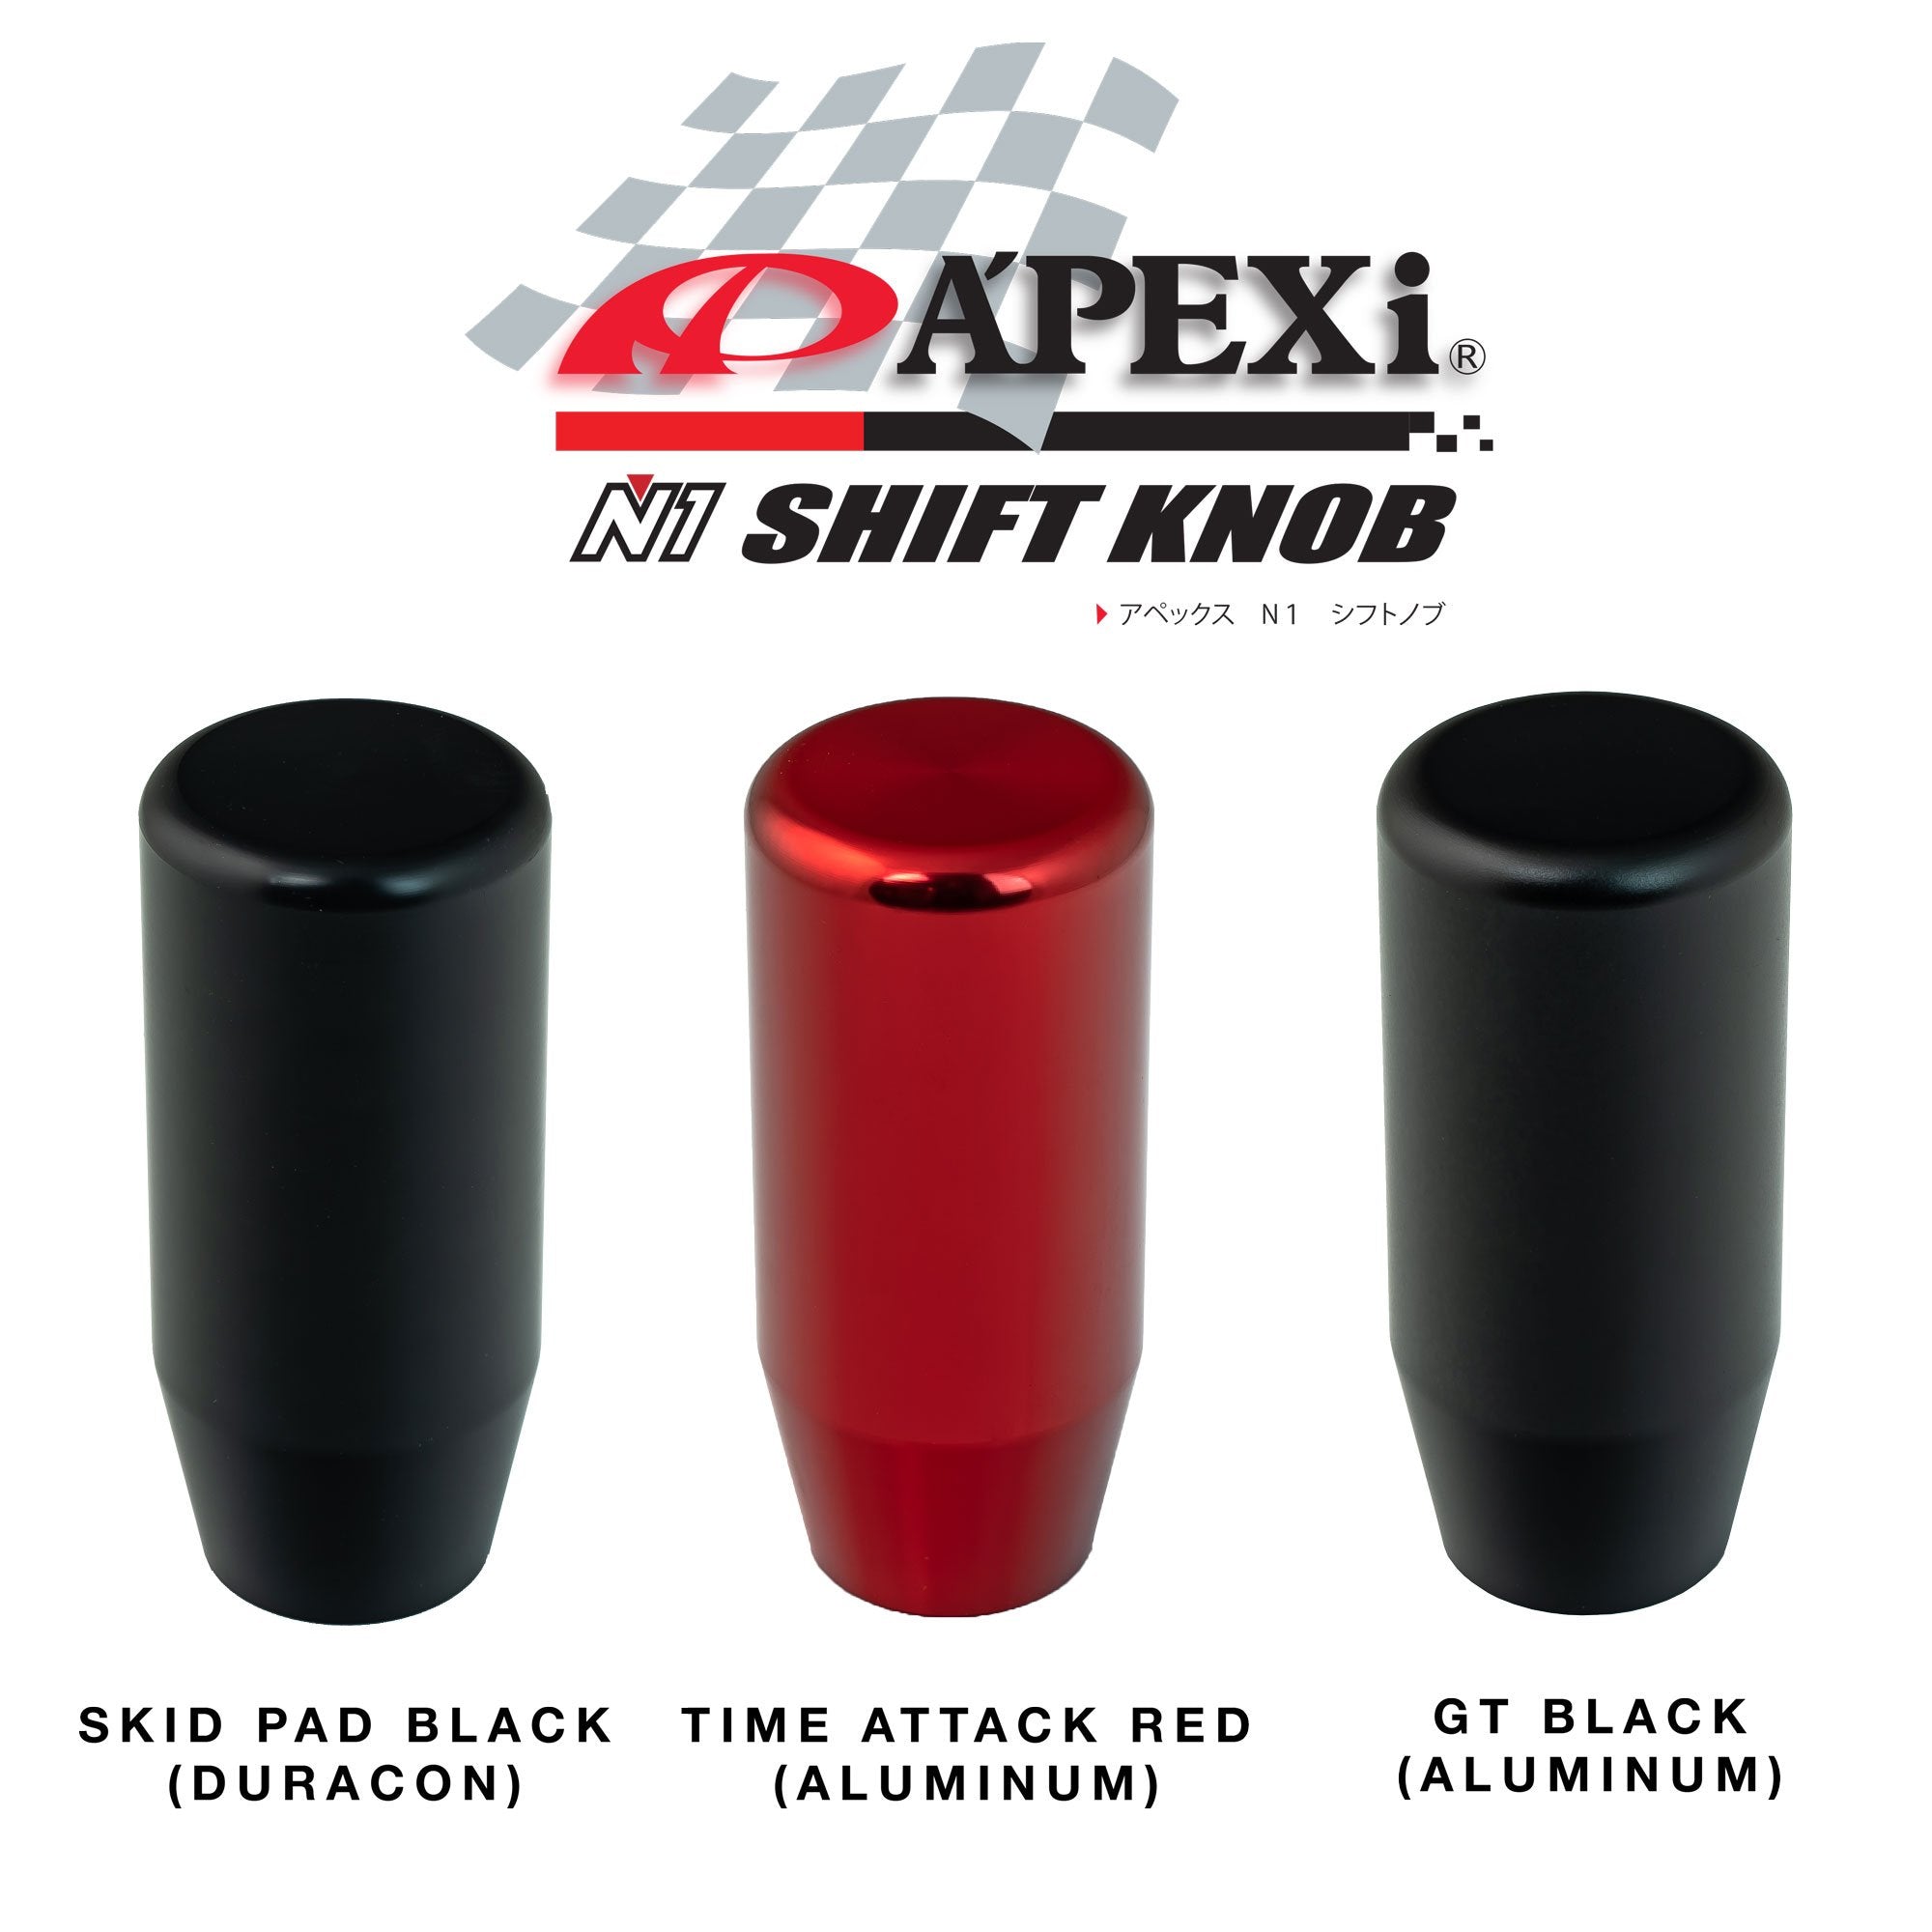 Apexi A'PEXi N1 Shift Knob - Skid Pad Black [Duracon]